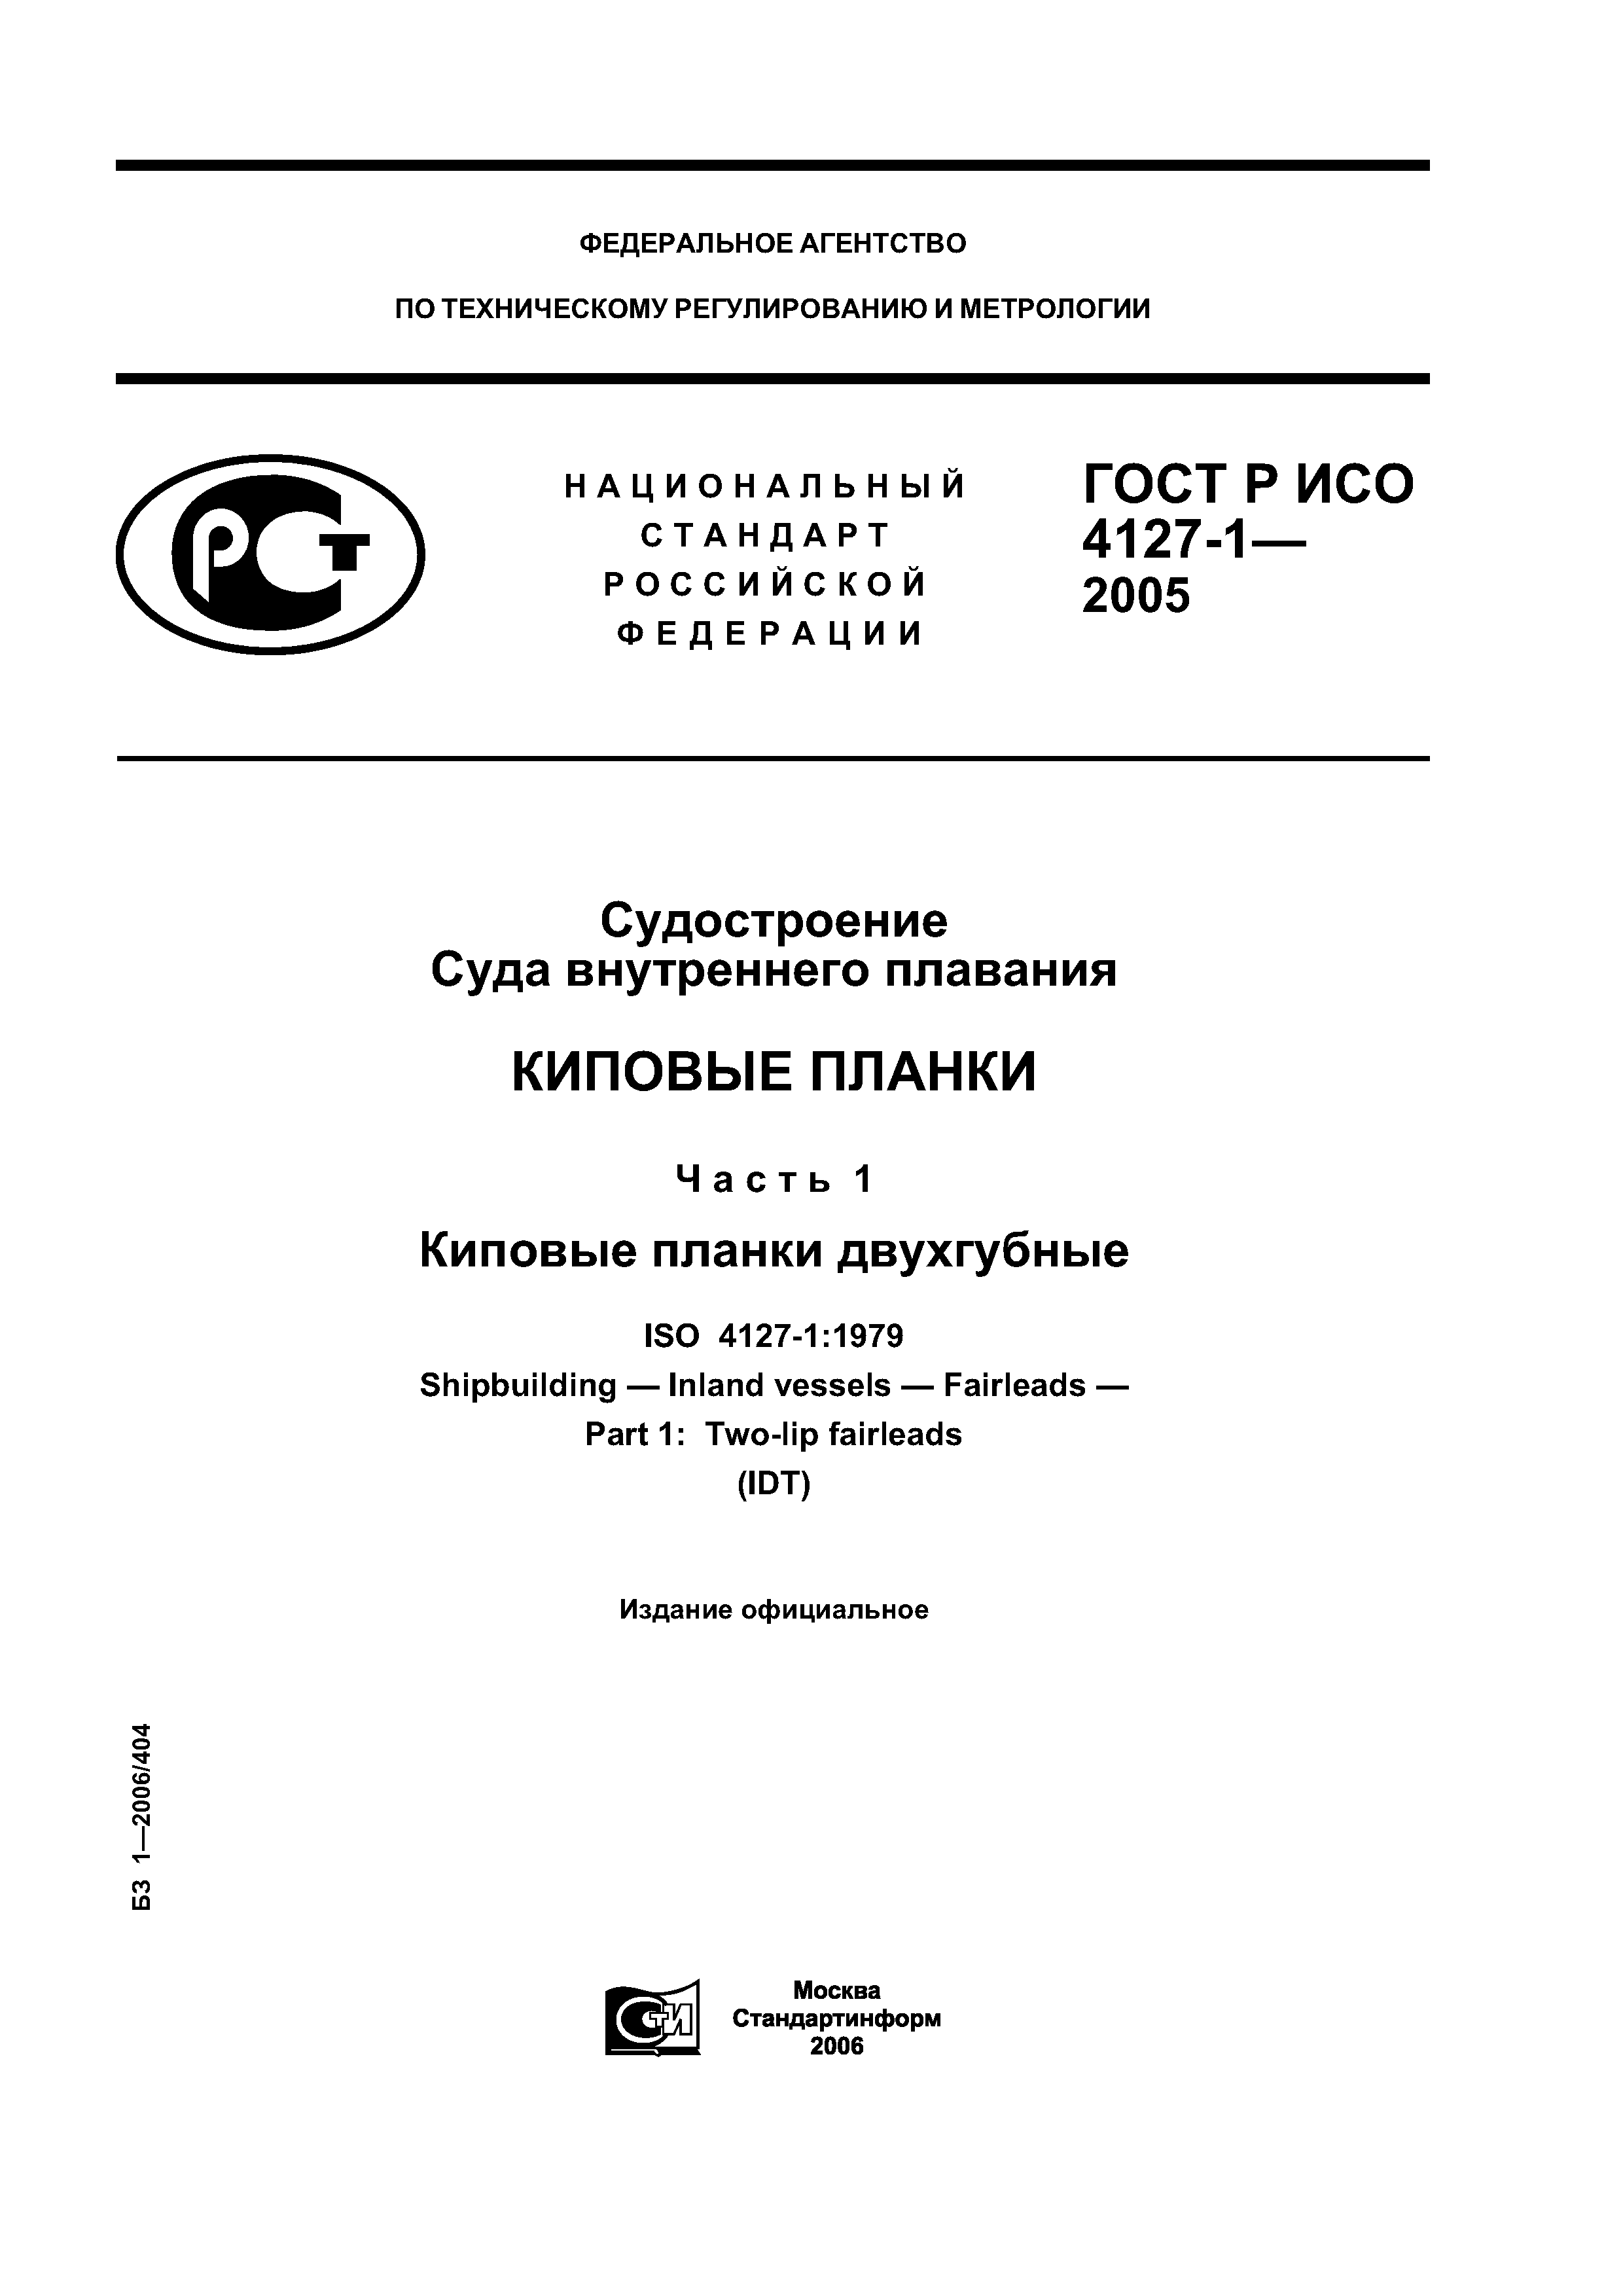 ГОСТ Р ИСО 4127-1-2005